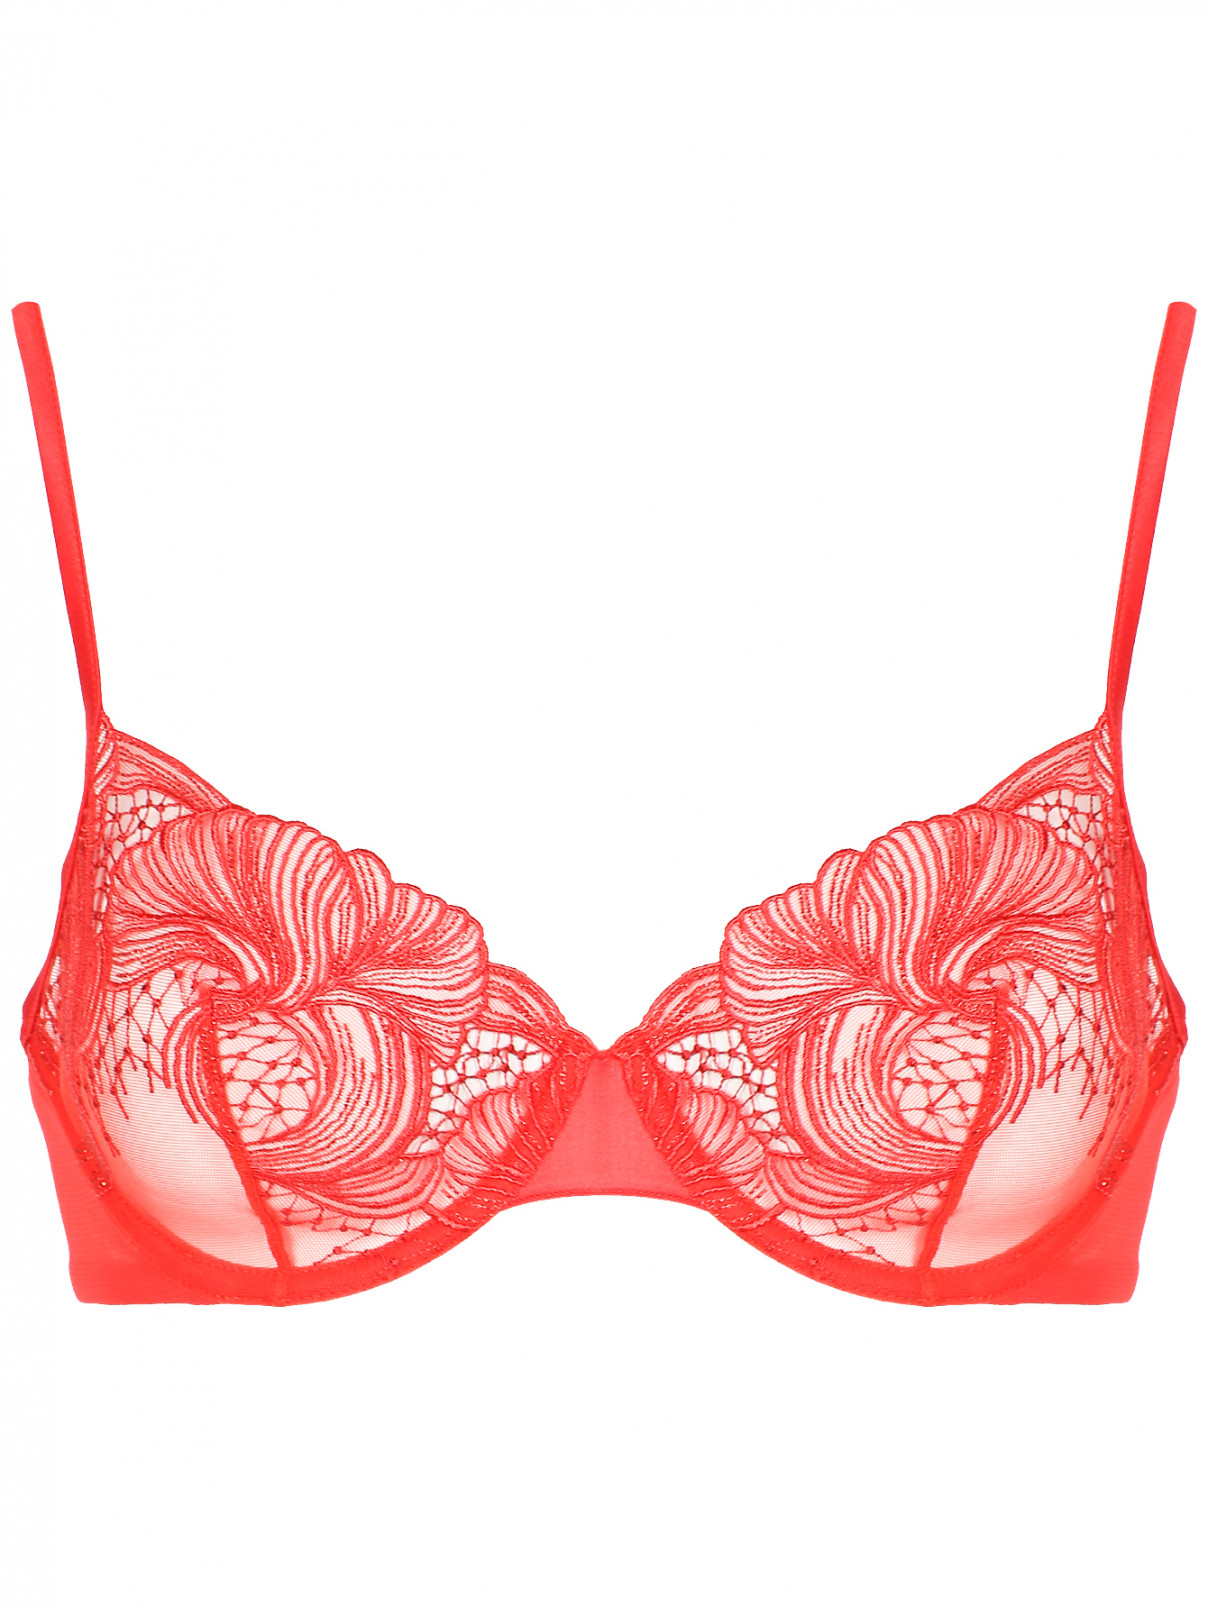 Бюстгальтер из сетки с декоративной вышивкой La Perla  –  Общий вид  – Цвет:  Красный